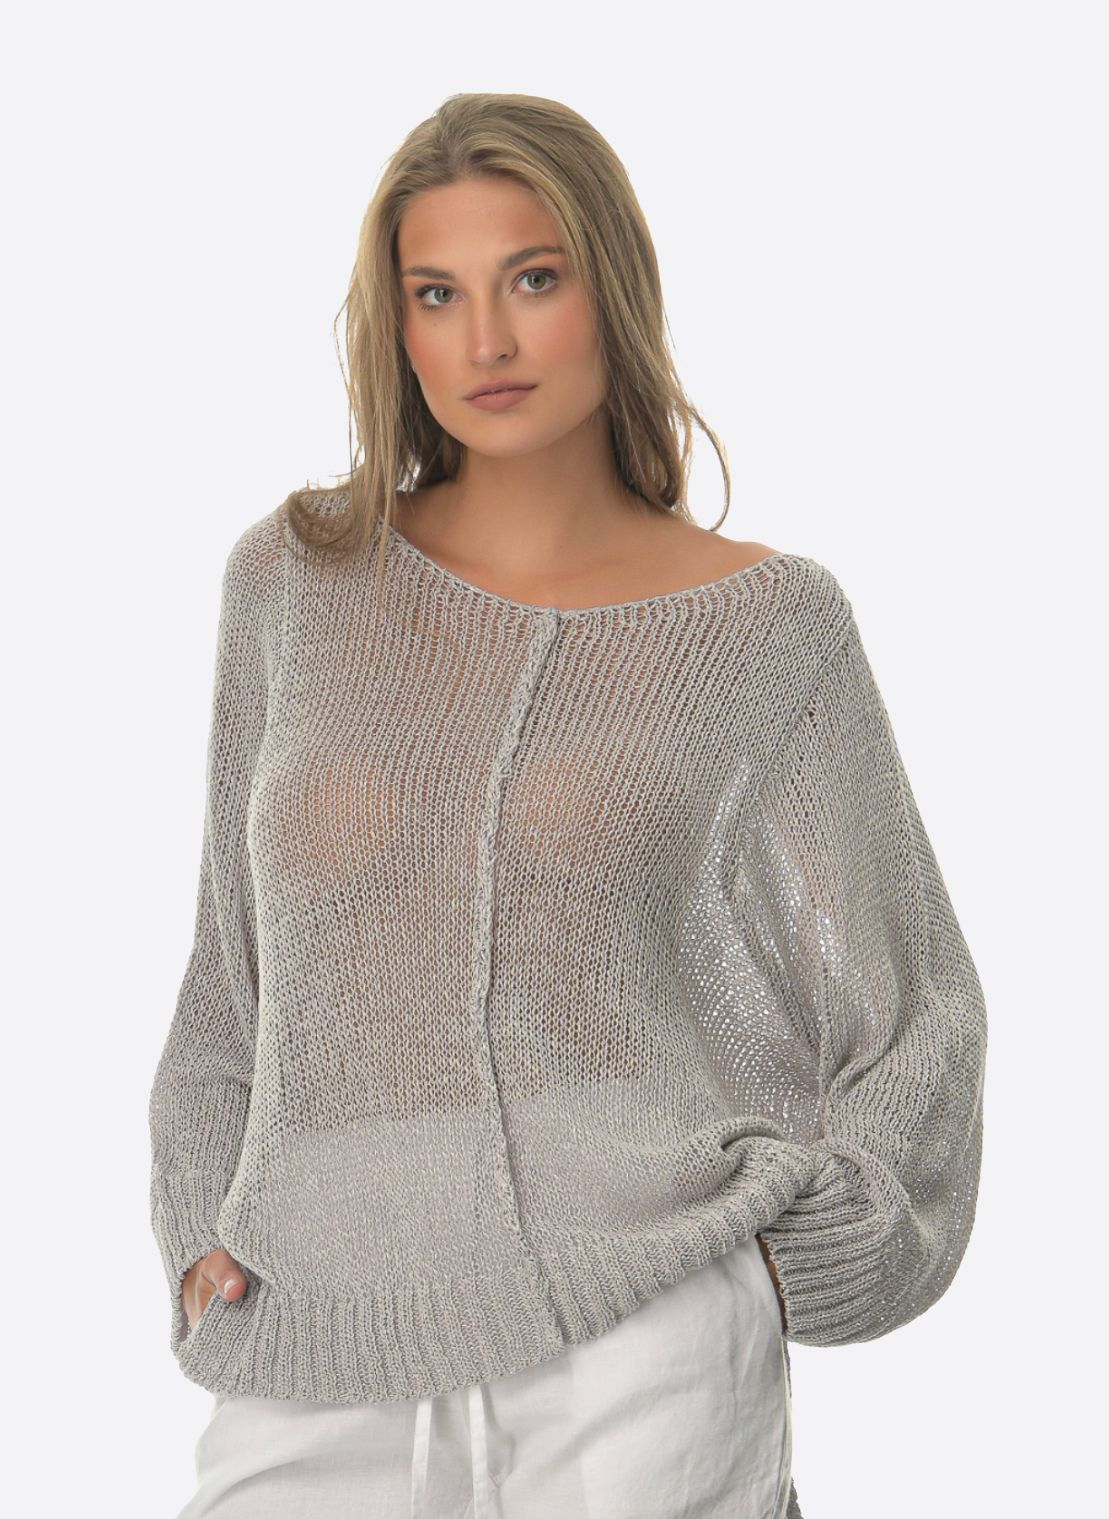 Μπλούζα Γυναικεία Sweater- My Boutique